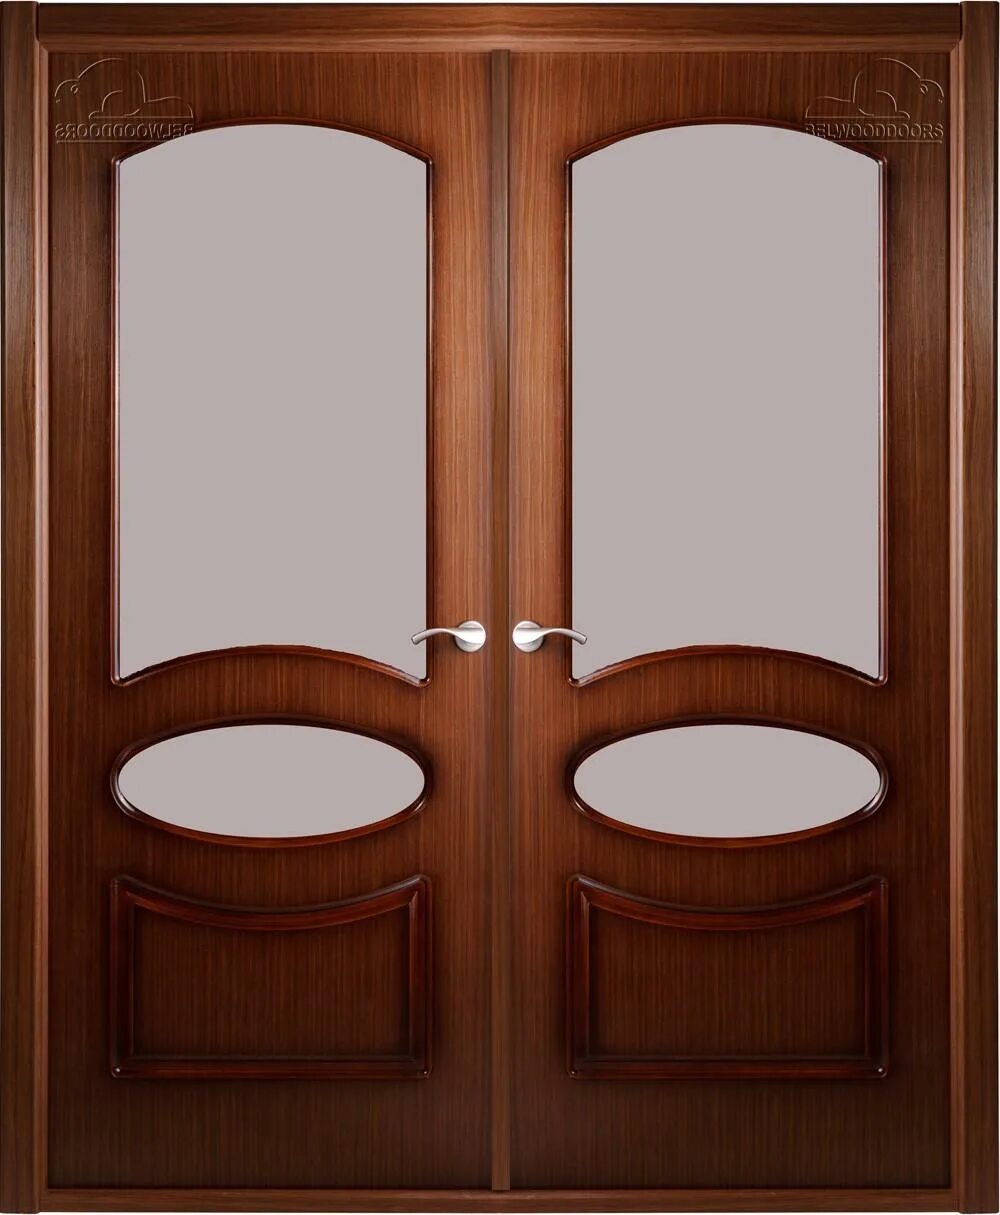 Дверь распашная двухстворчатая межкомнатная. Двустворчатые двери проем 1100. Двойные двери нестандартного размера. Двухстворчатые двери межкомнатные Размеры. Двойные двери межкомнатные Размеры.